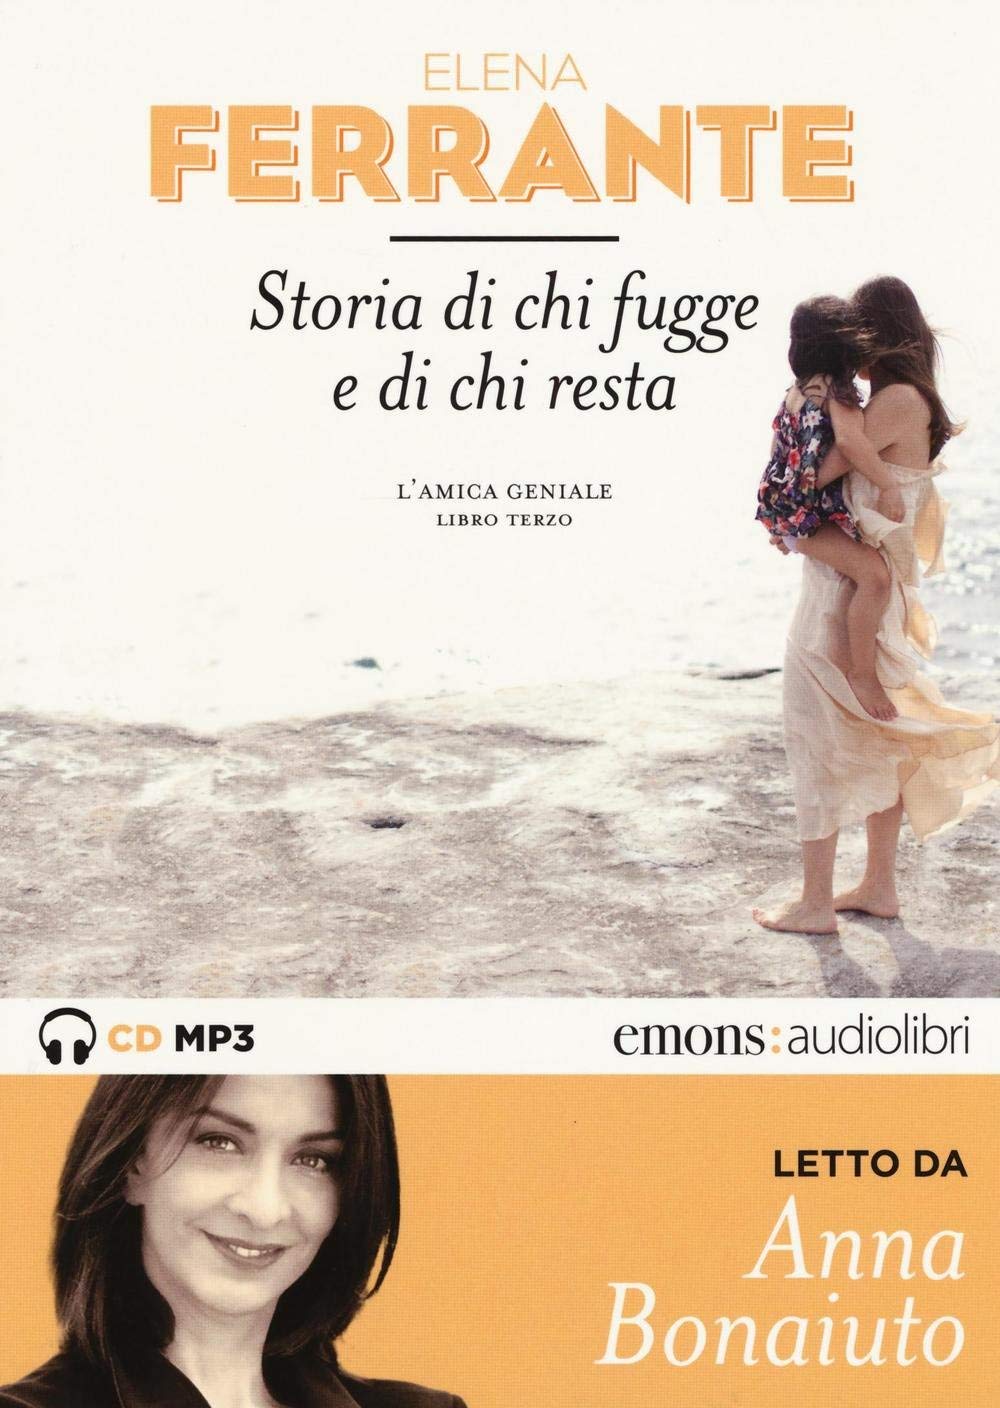 Audiolibro Elena Ferrante - Storia Di Chi Fugge E Di Chi Resta (Audiolibro) NUOVO SIGILLATO, EDIZIONE DEL 03/03/2016 SUBITO DISPONIBILE